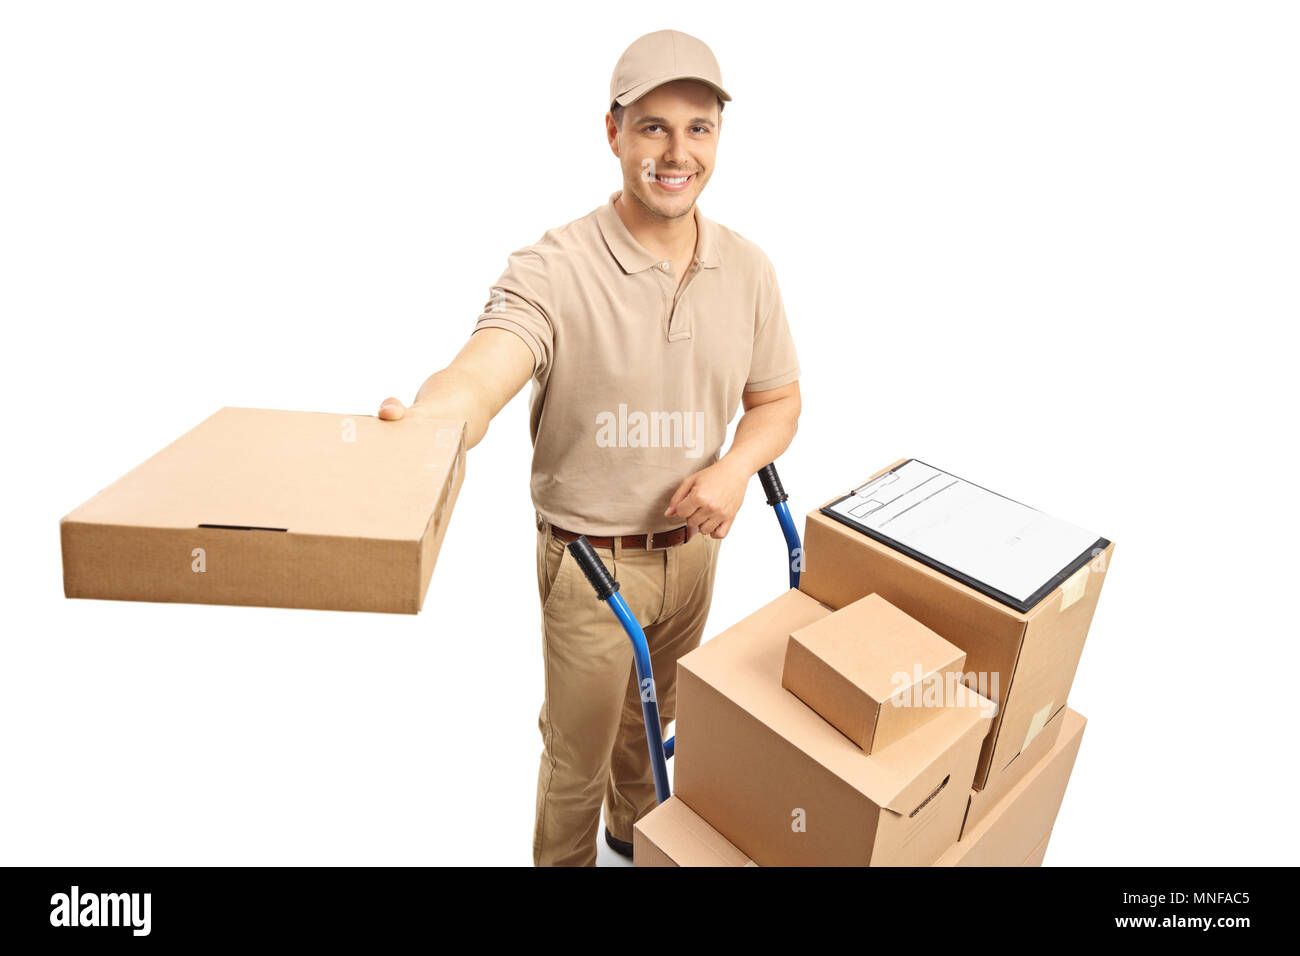 Uomo di erogazione con una mano carrello caricato con scatole dando un pacchetto isolato su sfondo bianco Foto Stock